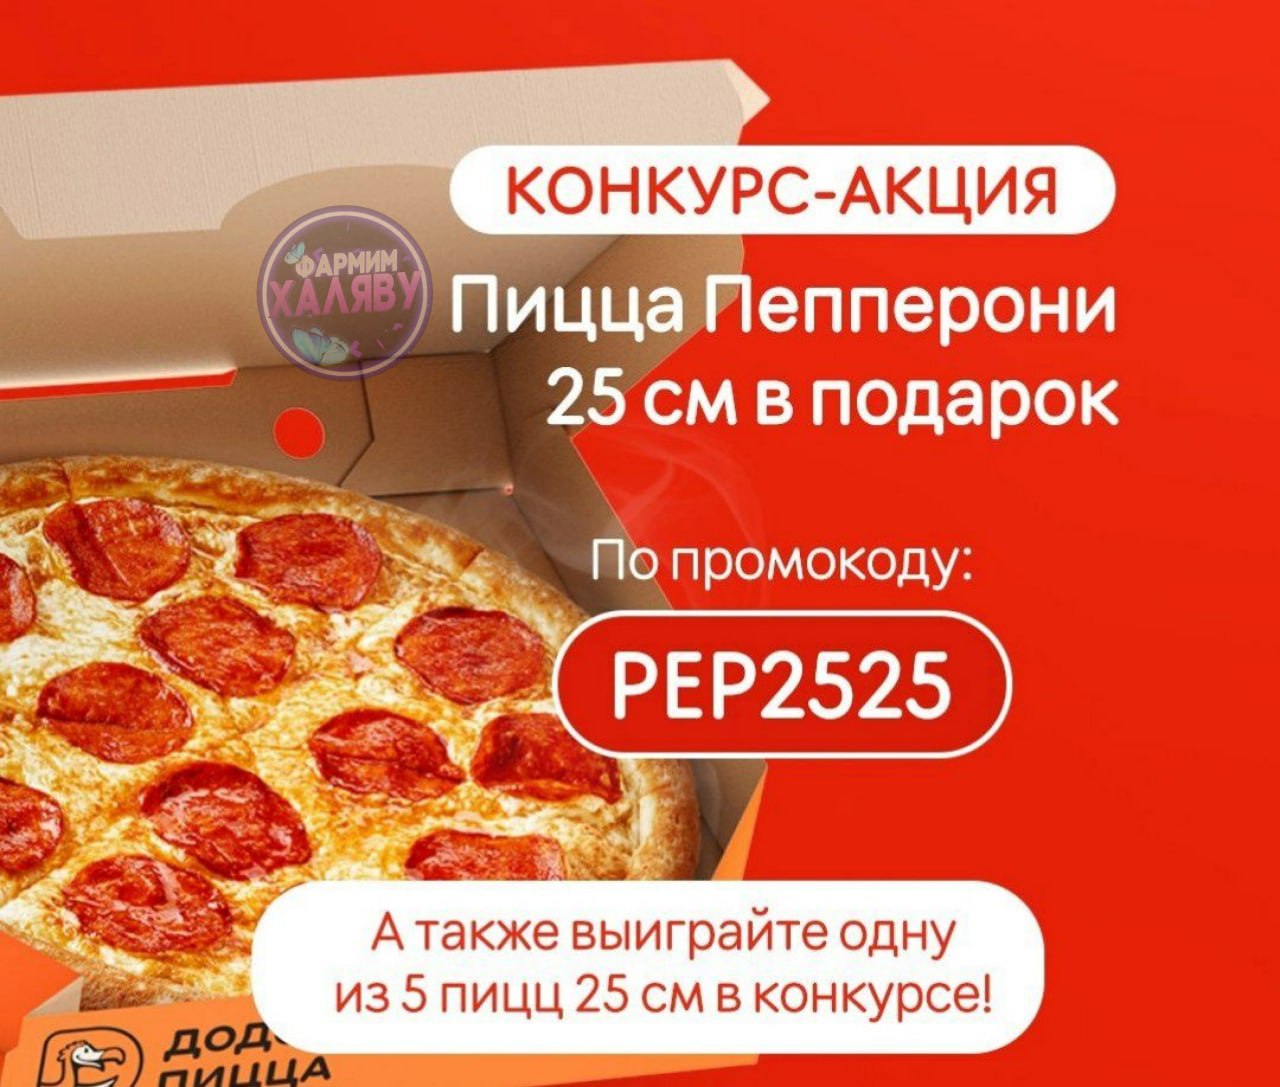 сколько стоит пицца пепперони в спаре фото 116